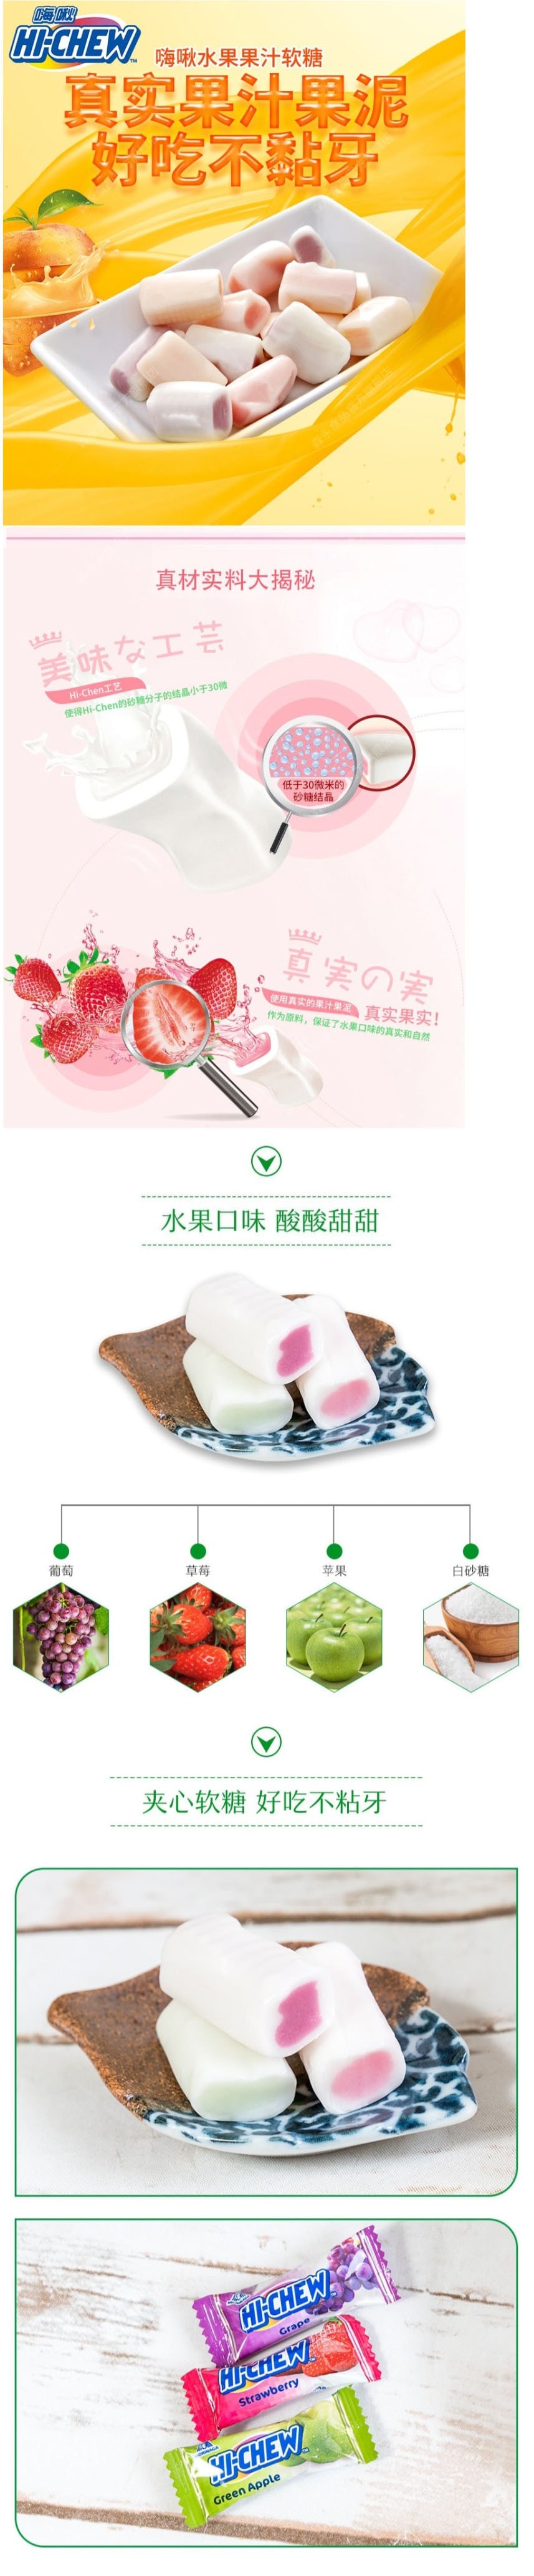 【日本直邮】MORINAGA森永 水果口味夹心软糖 3种口味组合装 草莓味/葡萄味/苹果味 86g